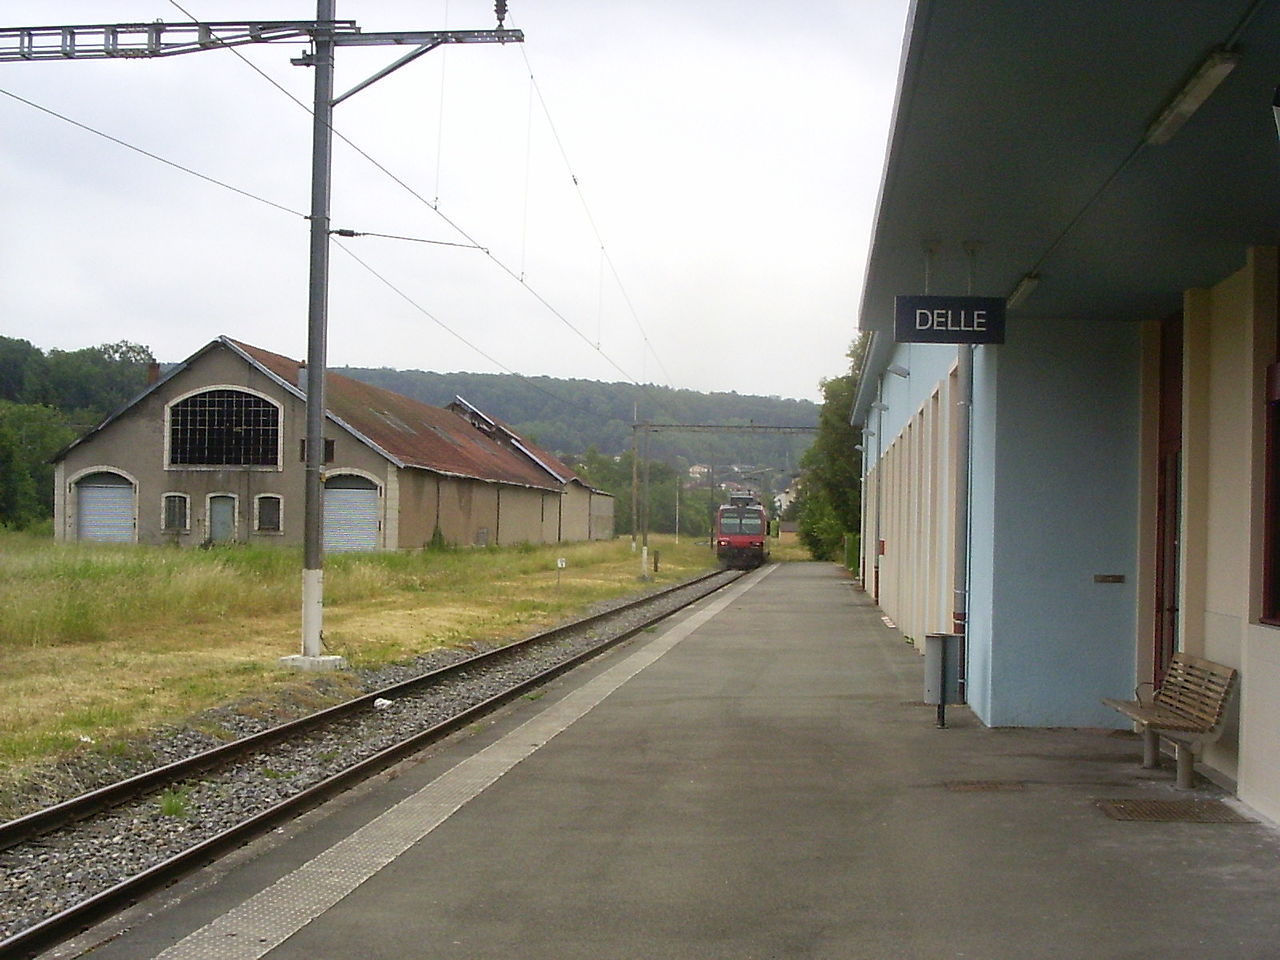 Franciaország keleti részén, a Belfort-tól a svájci határnál található Delle-ig vezető vasútvonalon huszonhat év után ismét állandó személyforgalom lesz 2018 decemberétől (fotó: Wikipedia)